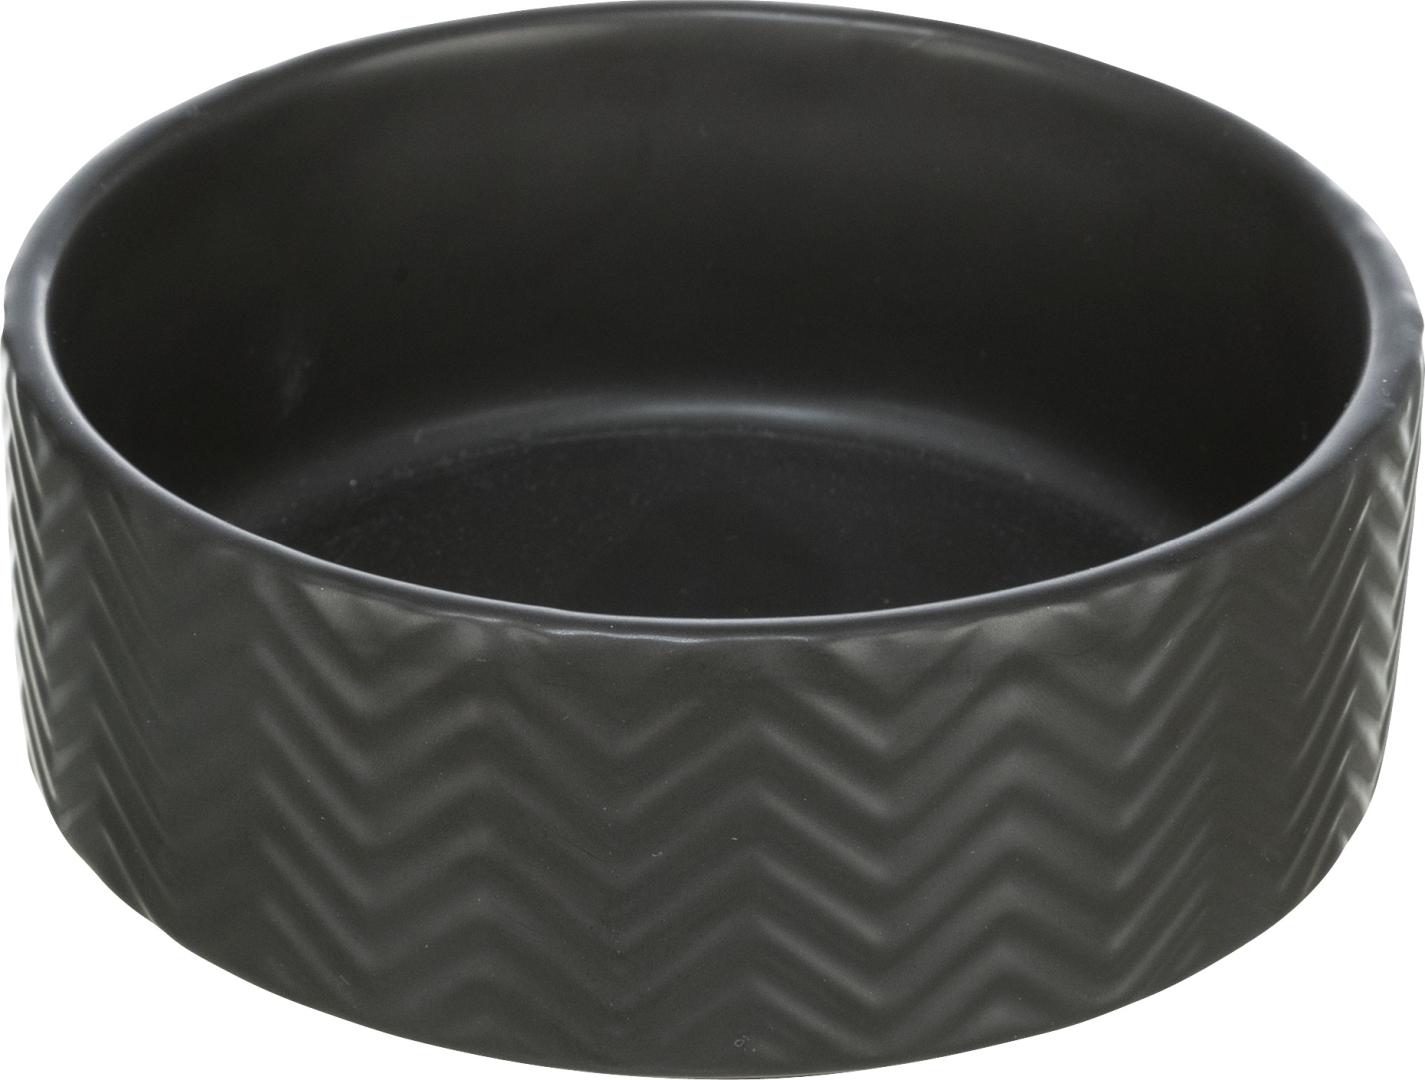 TRIXIE Napf, Keramik, 0,4 l / Ø 13 cm, schwarz